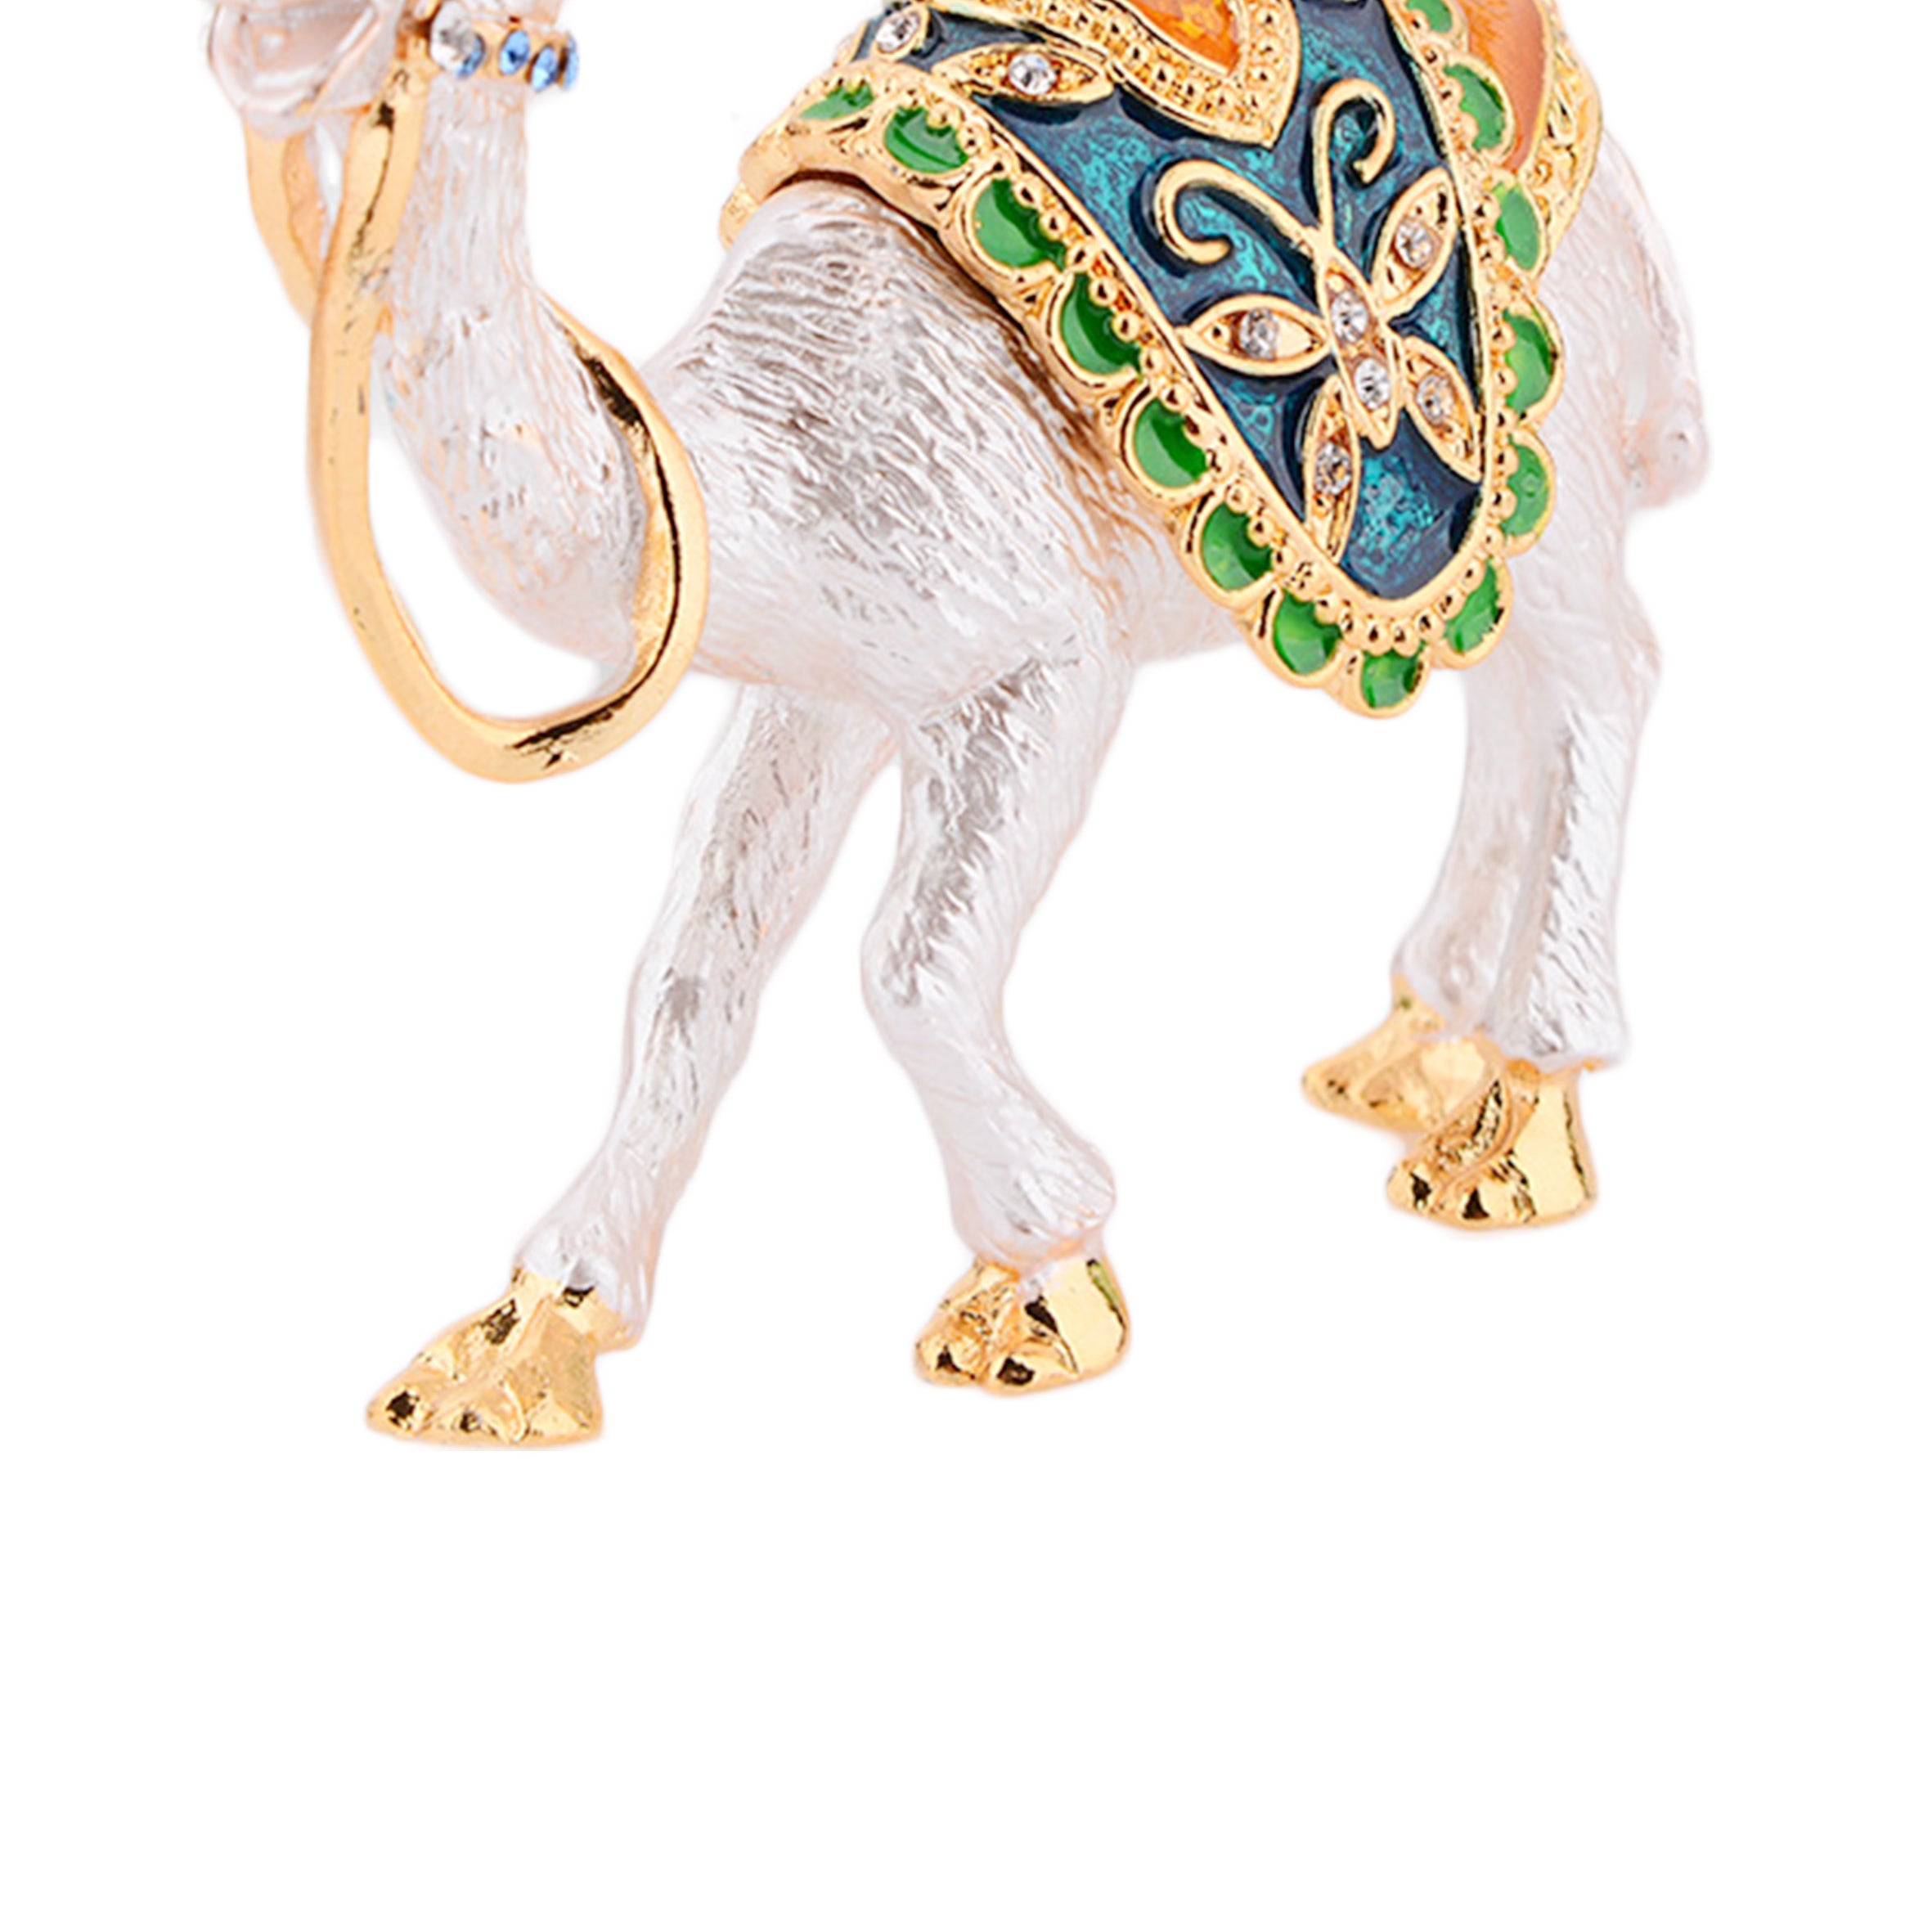 Camel Rhinestone Jewelry Box Ornaments W1793